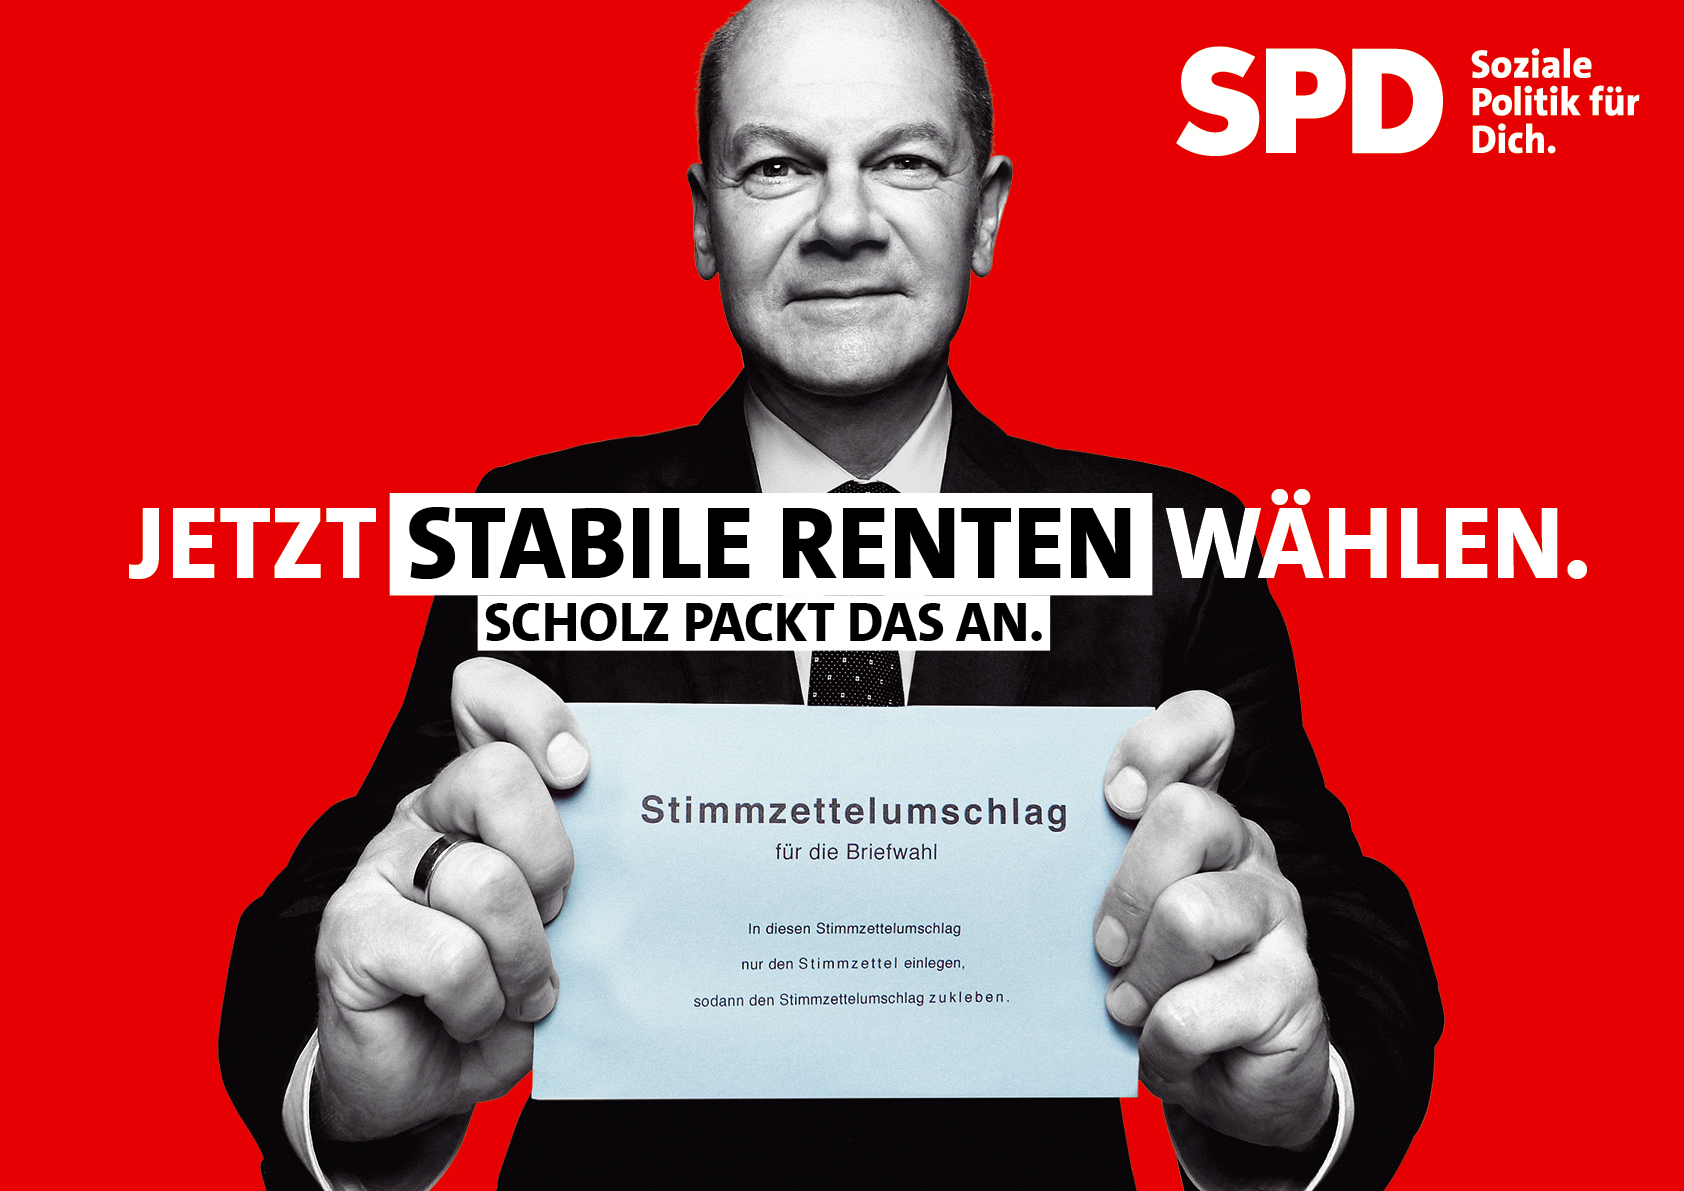 SPD Plakat Bundestagswahl 2021 – Stabile Renten